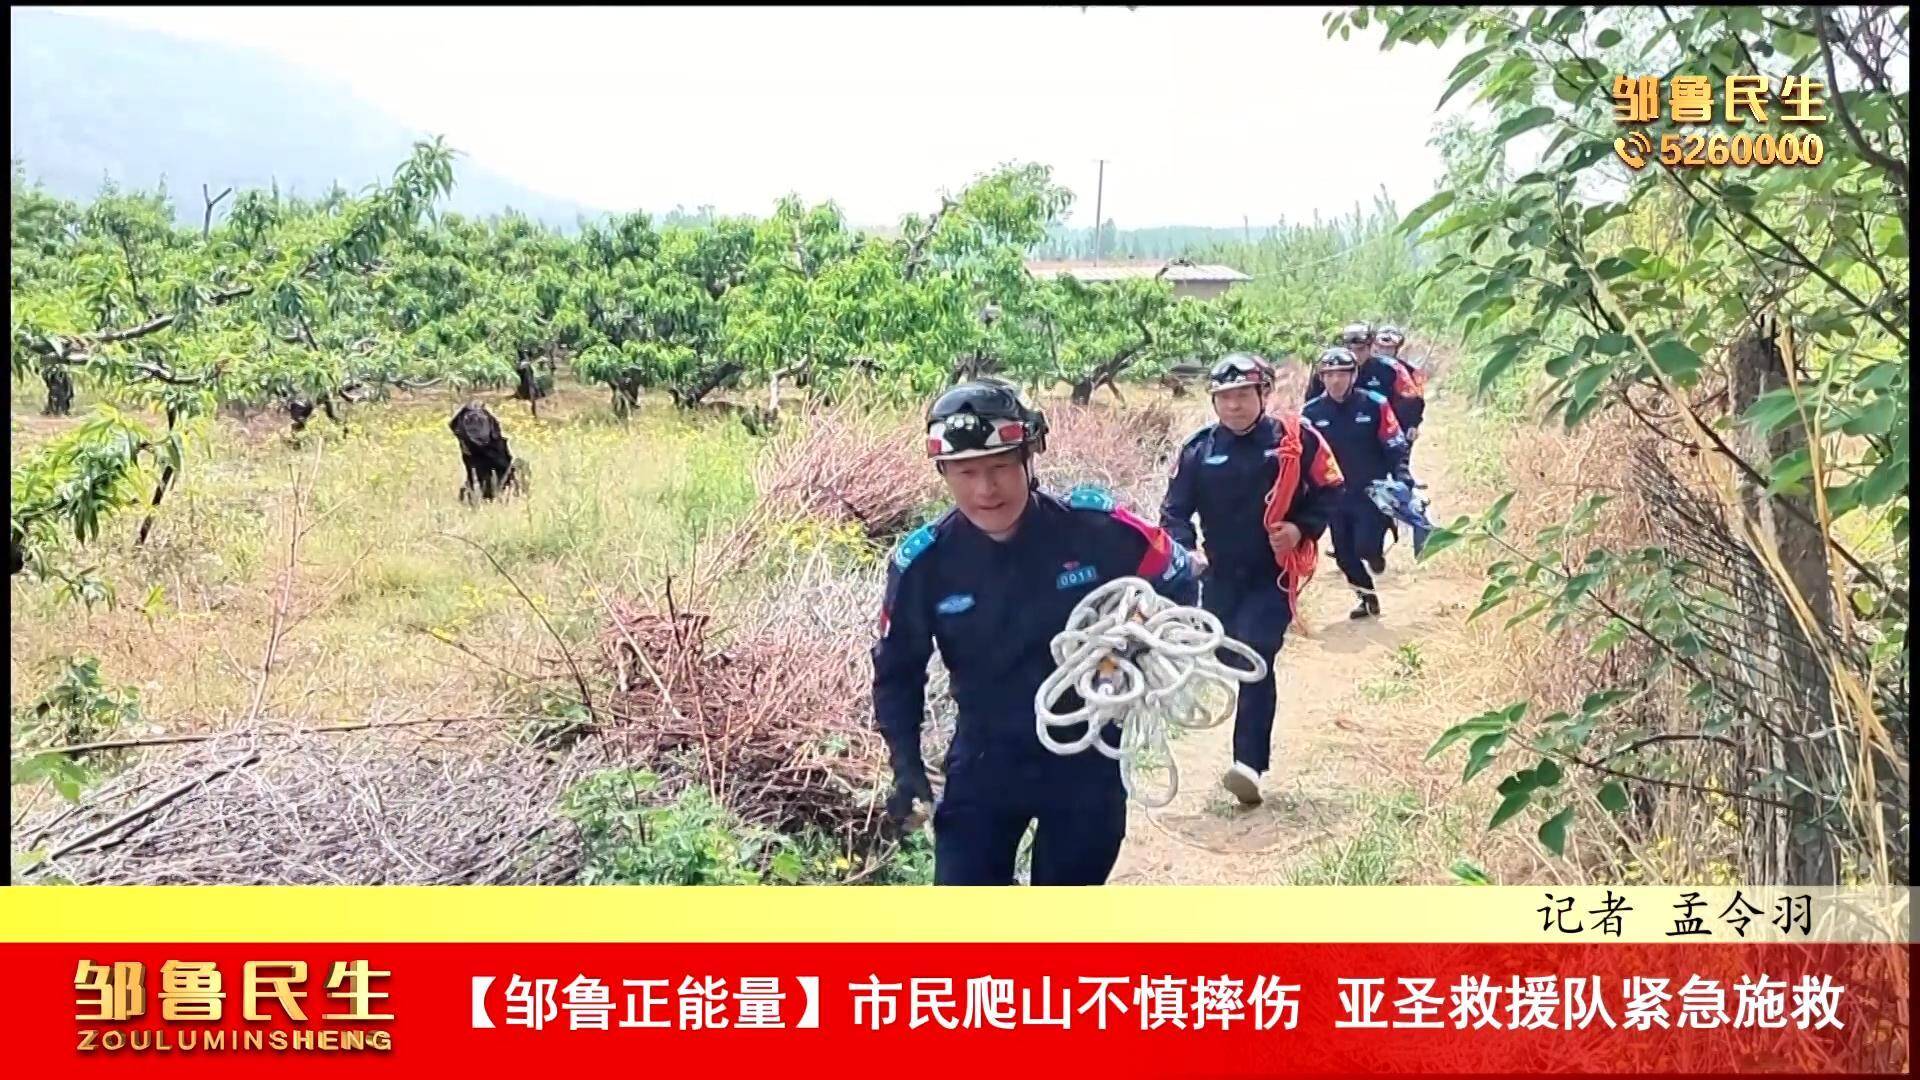 【视频新闻】【邹鲁正能量】市民爬山不慎摔伤 亚圣救援队紧急施救